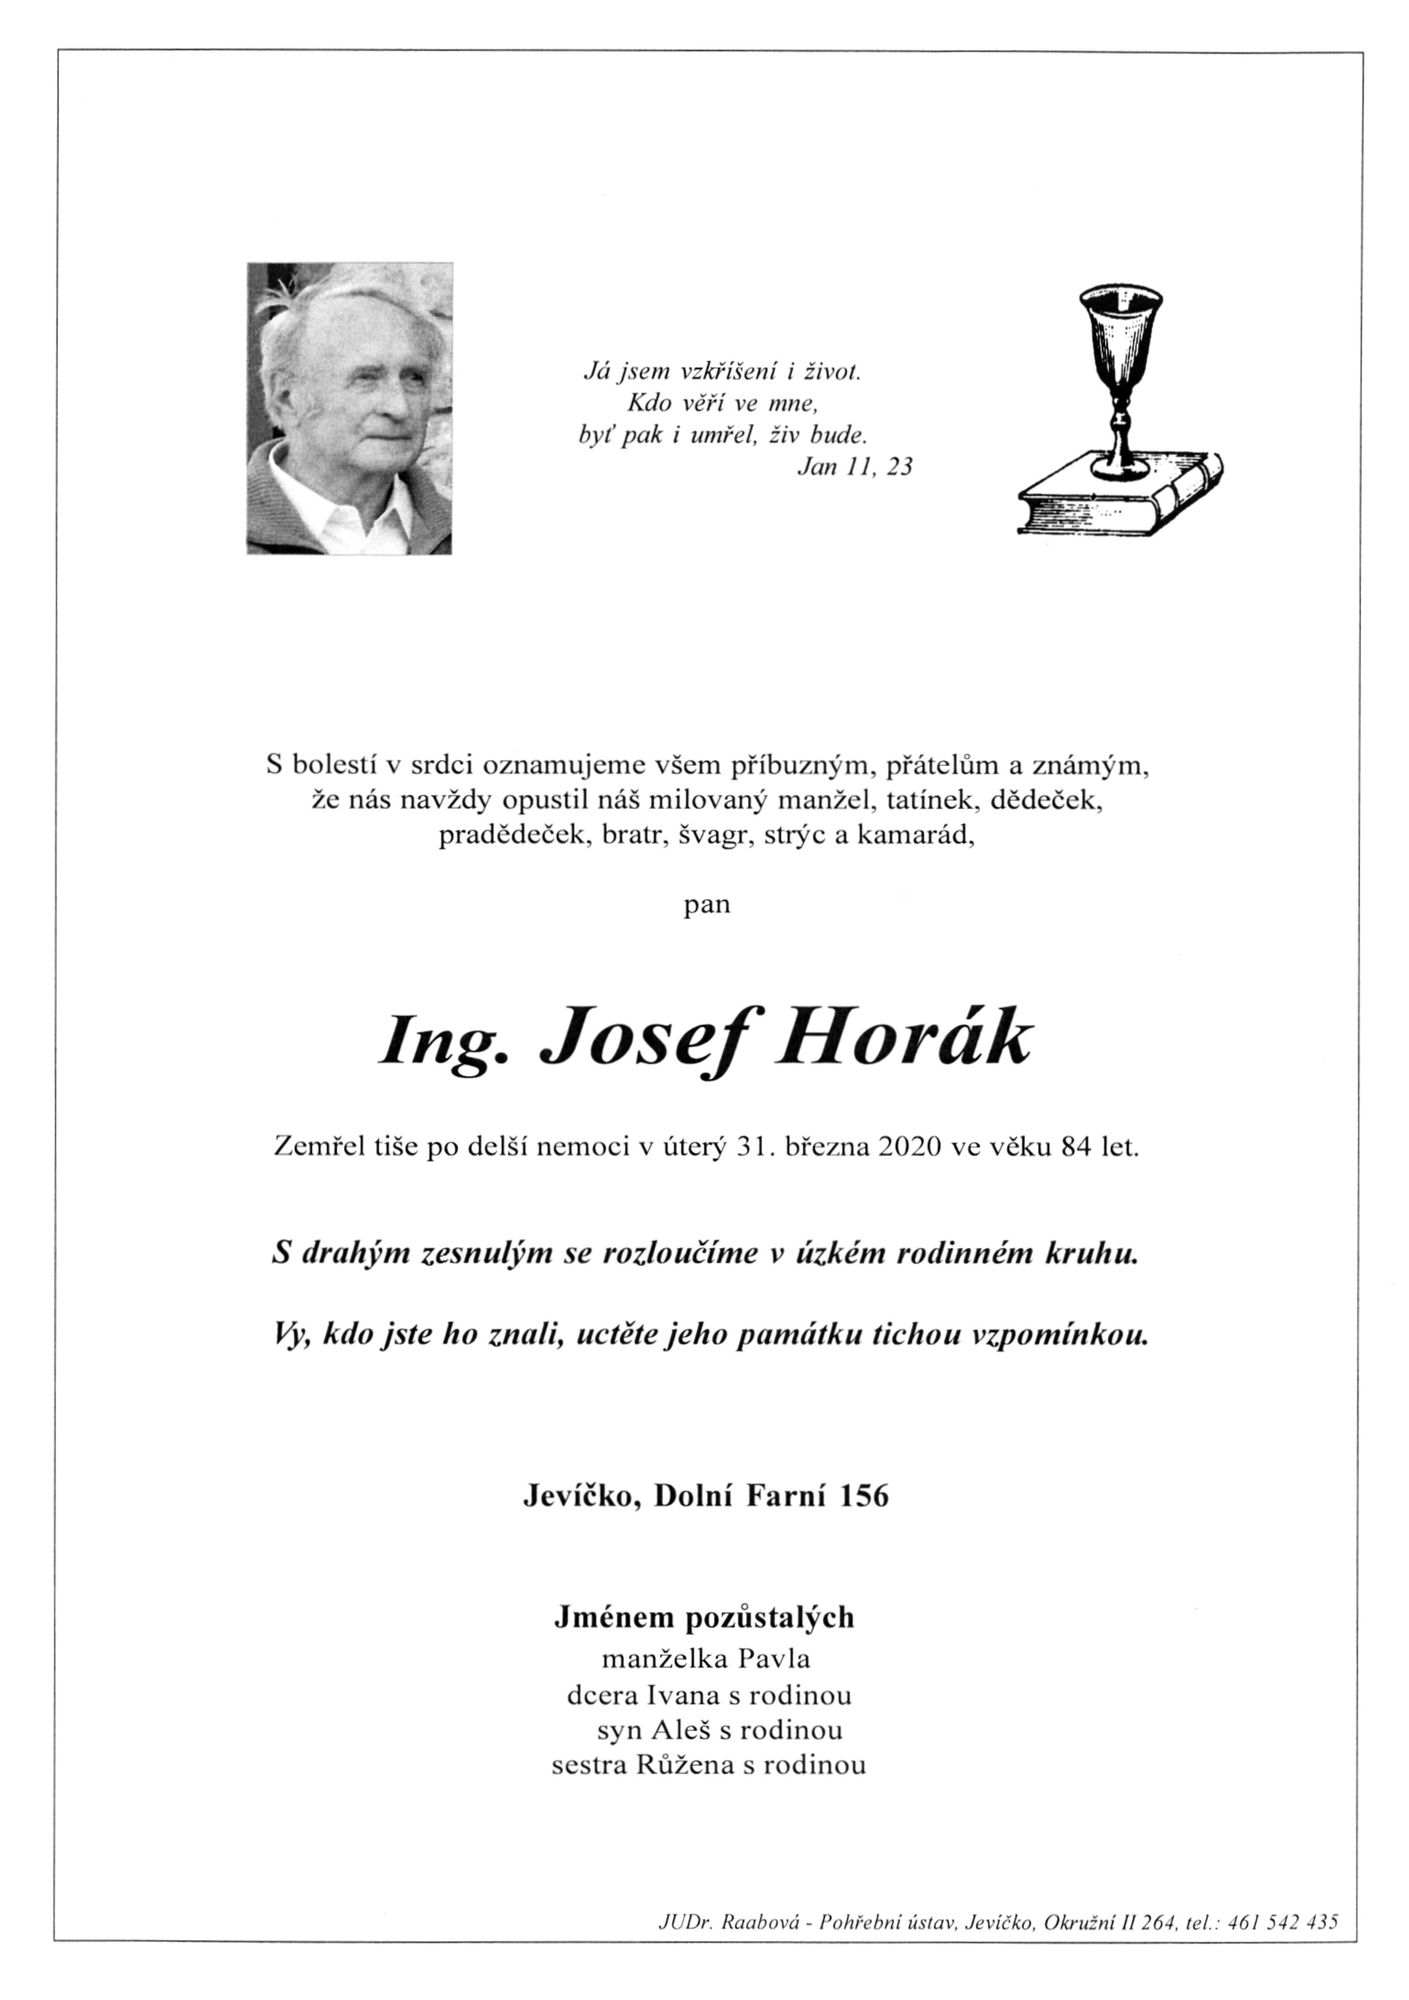 Ing. Josef Horák